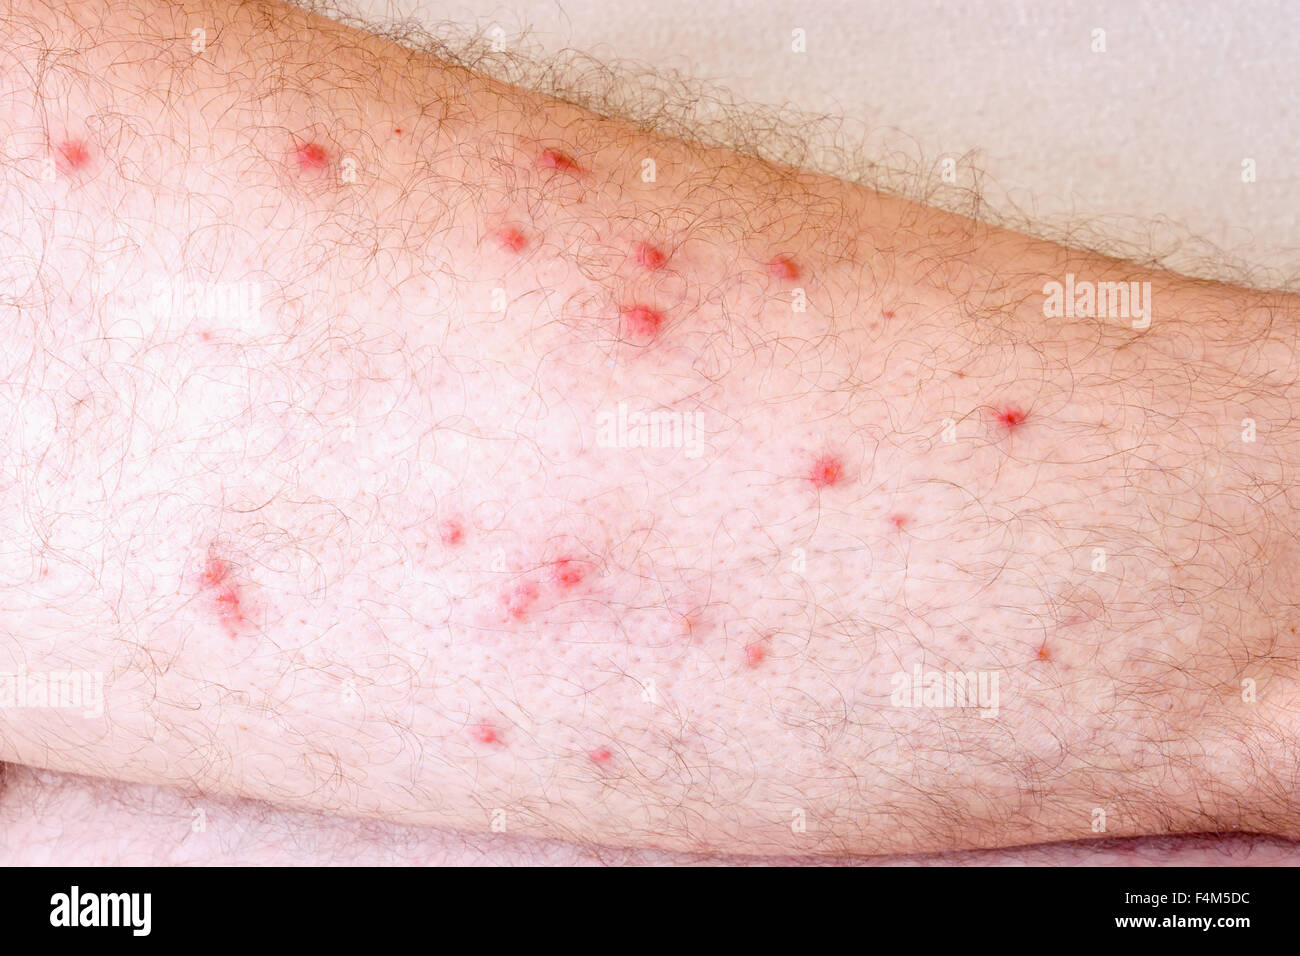 Allergic reaction to the leg Stock Photo